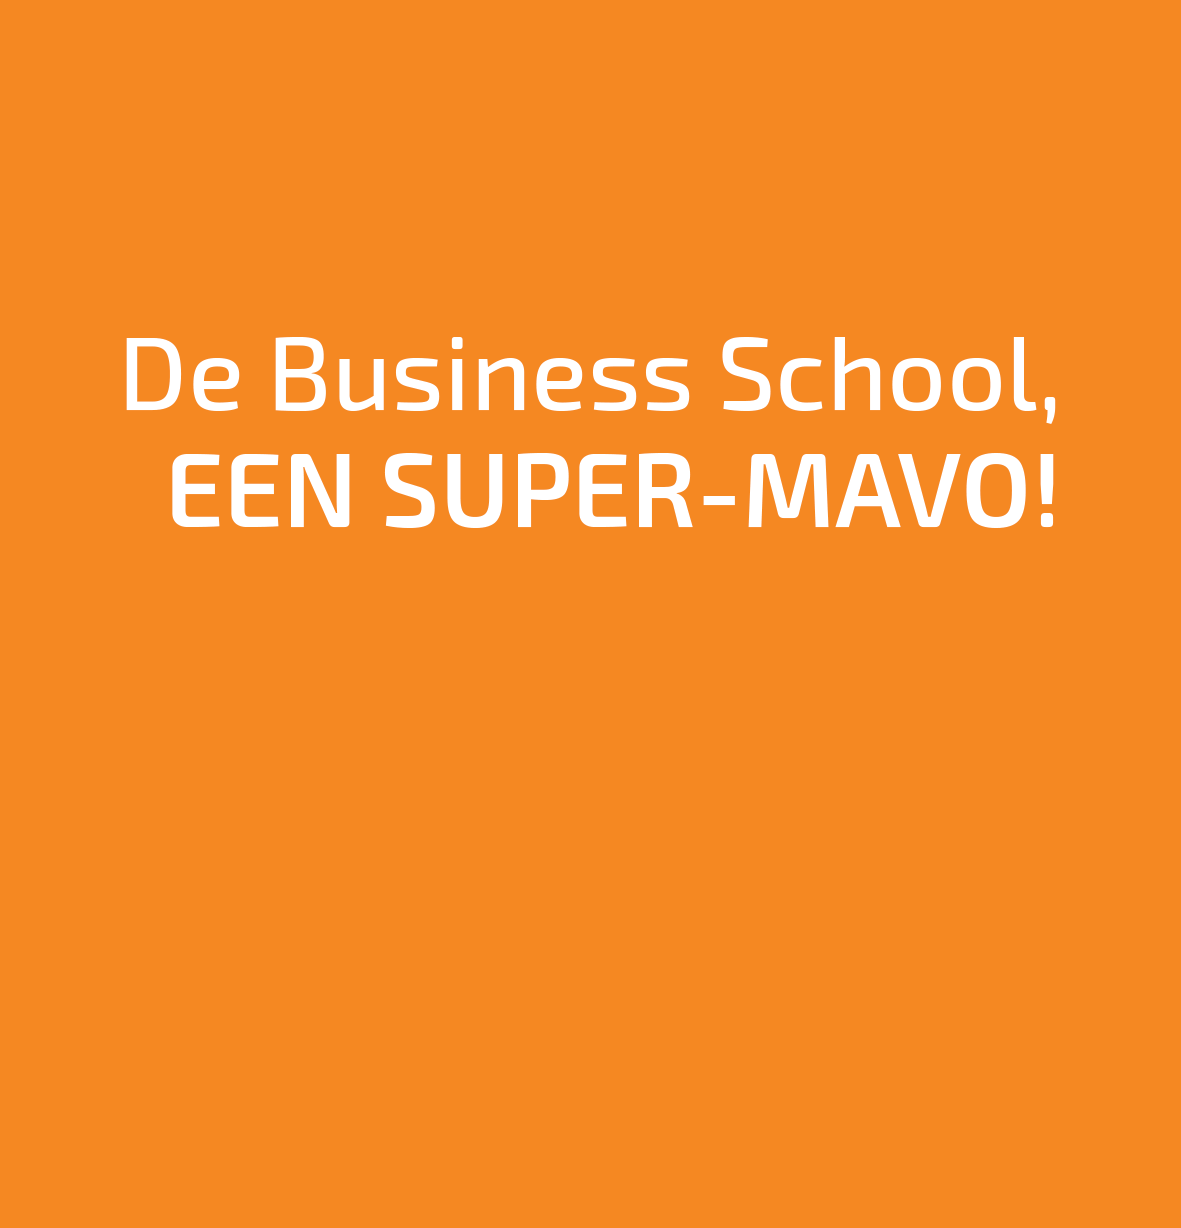 Als je niet naar een gewone mavo wilt, maar naar een SUPER-MAVO moet je op Penta Hoogvliet zijn. De mavo van en de havo-top van Penta Hoogvliet noemen we samen de BUSINESS SCHOOL.